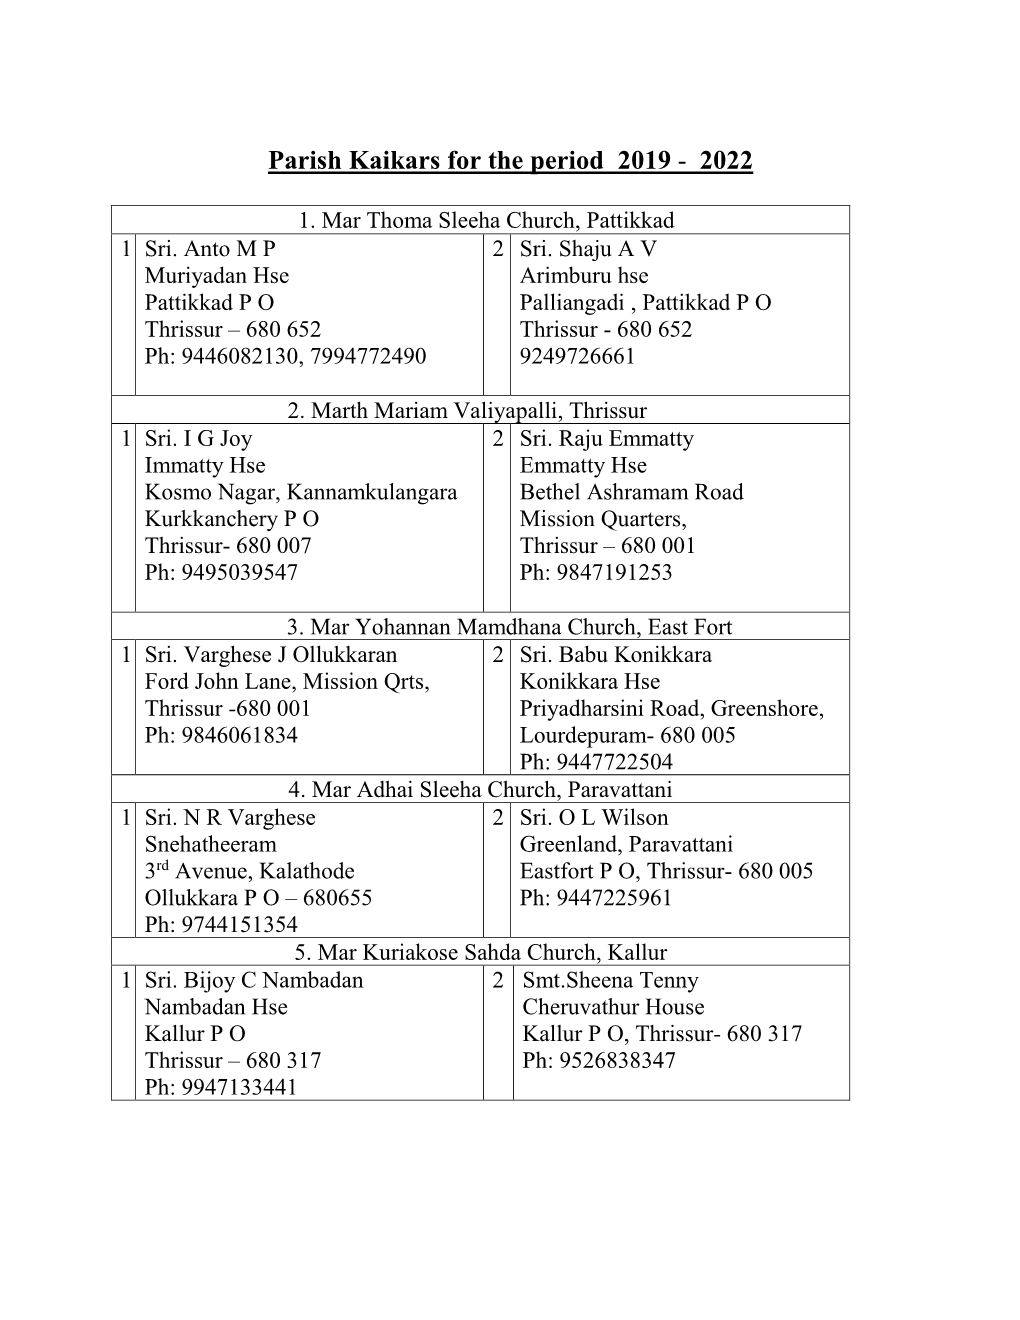 Parish Kaikars 2019-2022